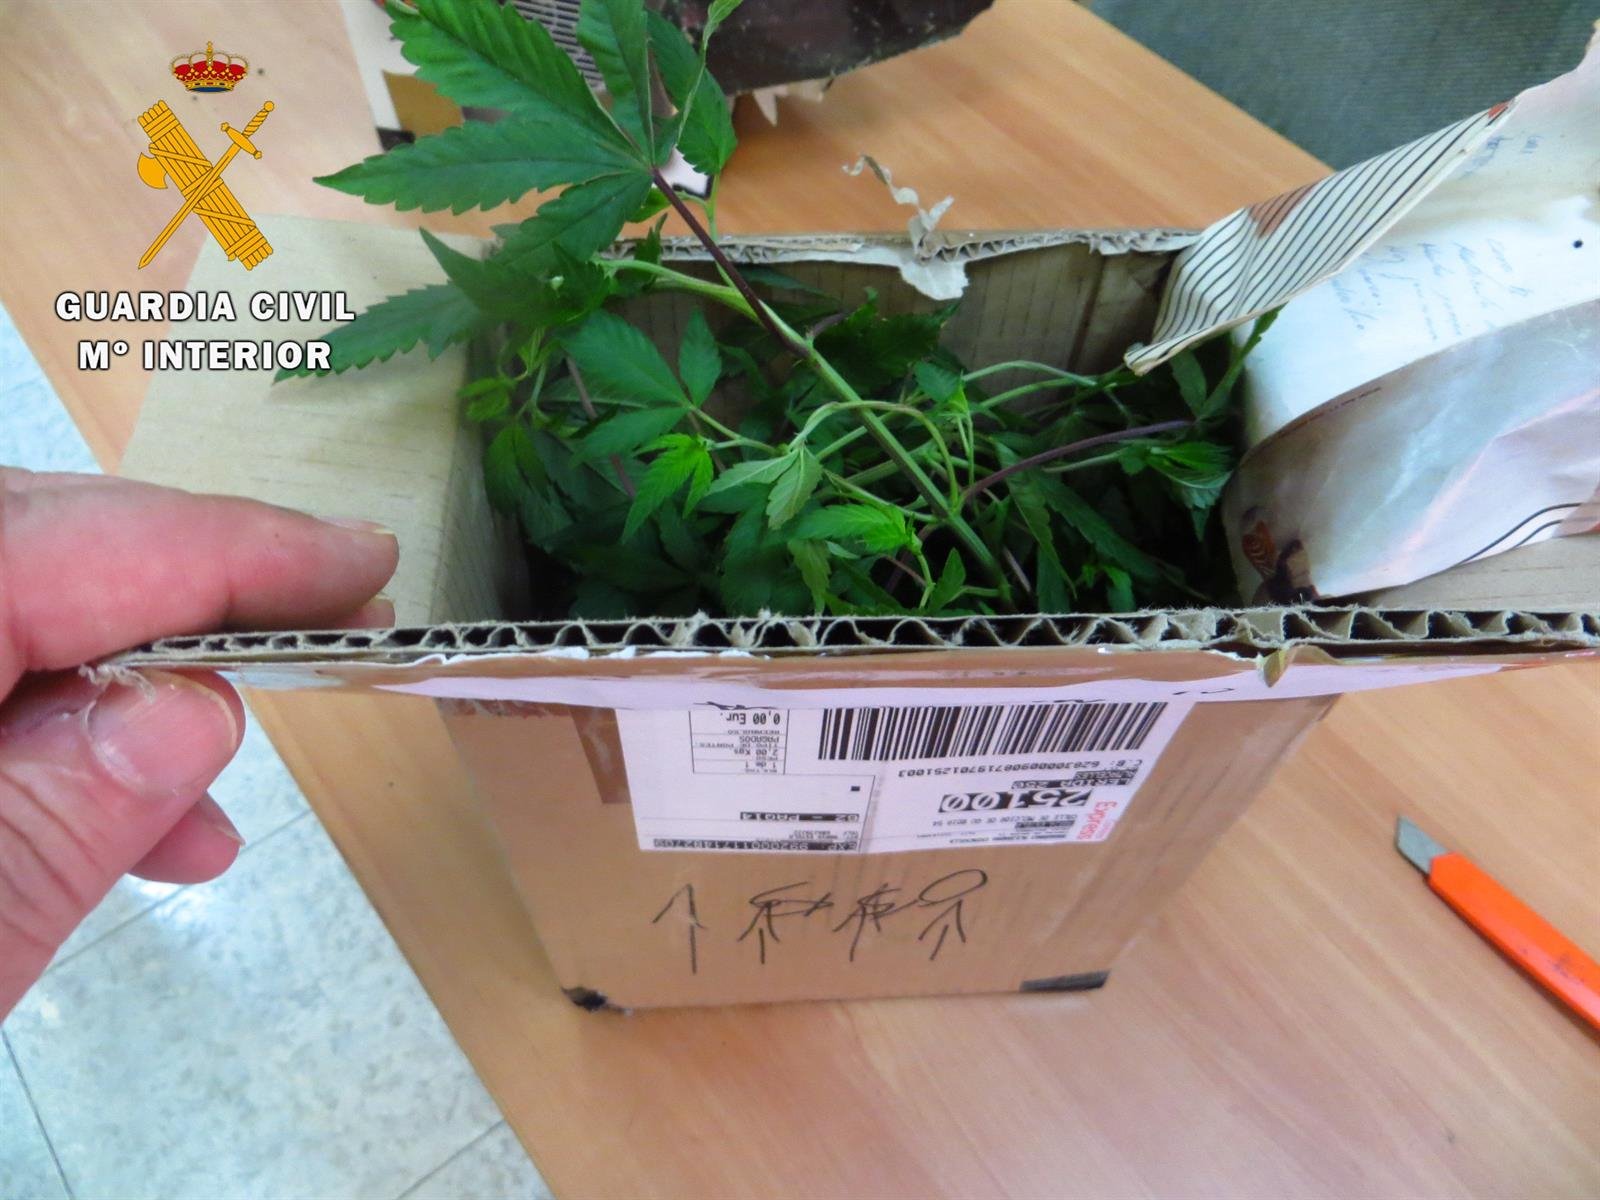 Descubren envíos de plantas de marihuana a través de paquetes postales